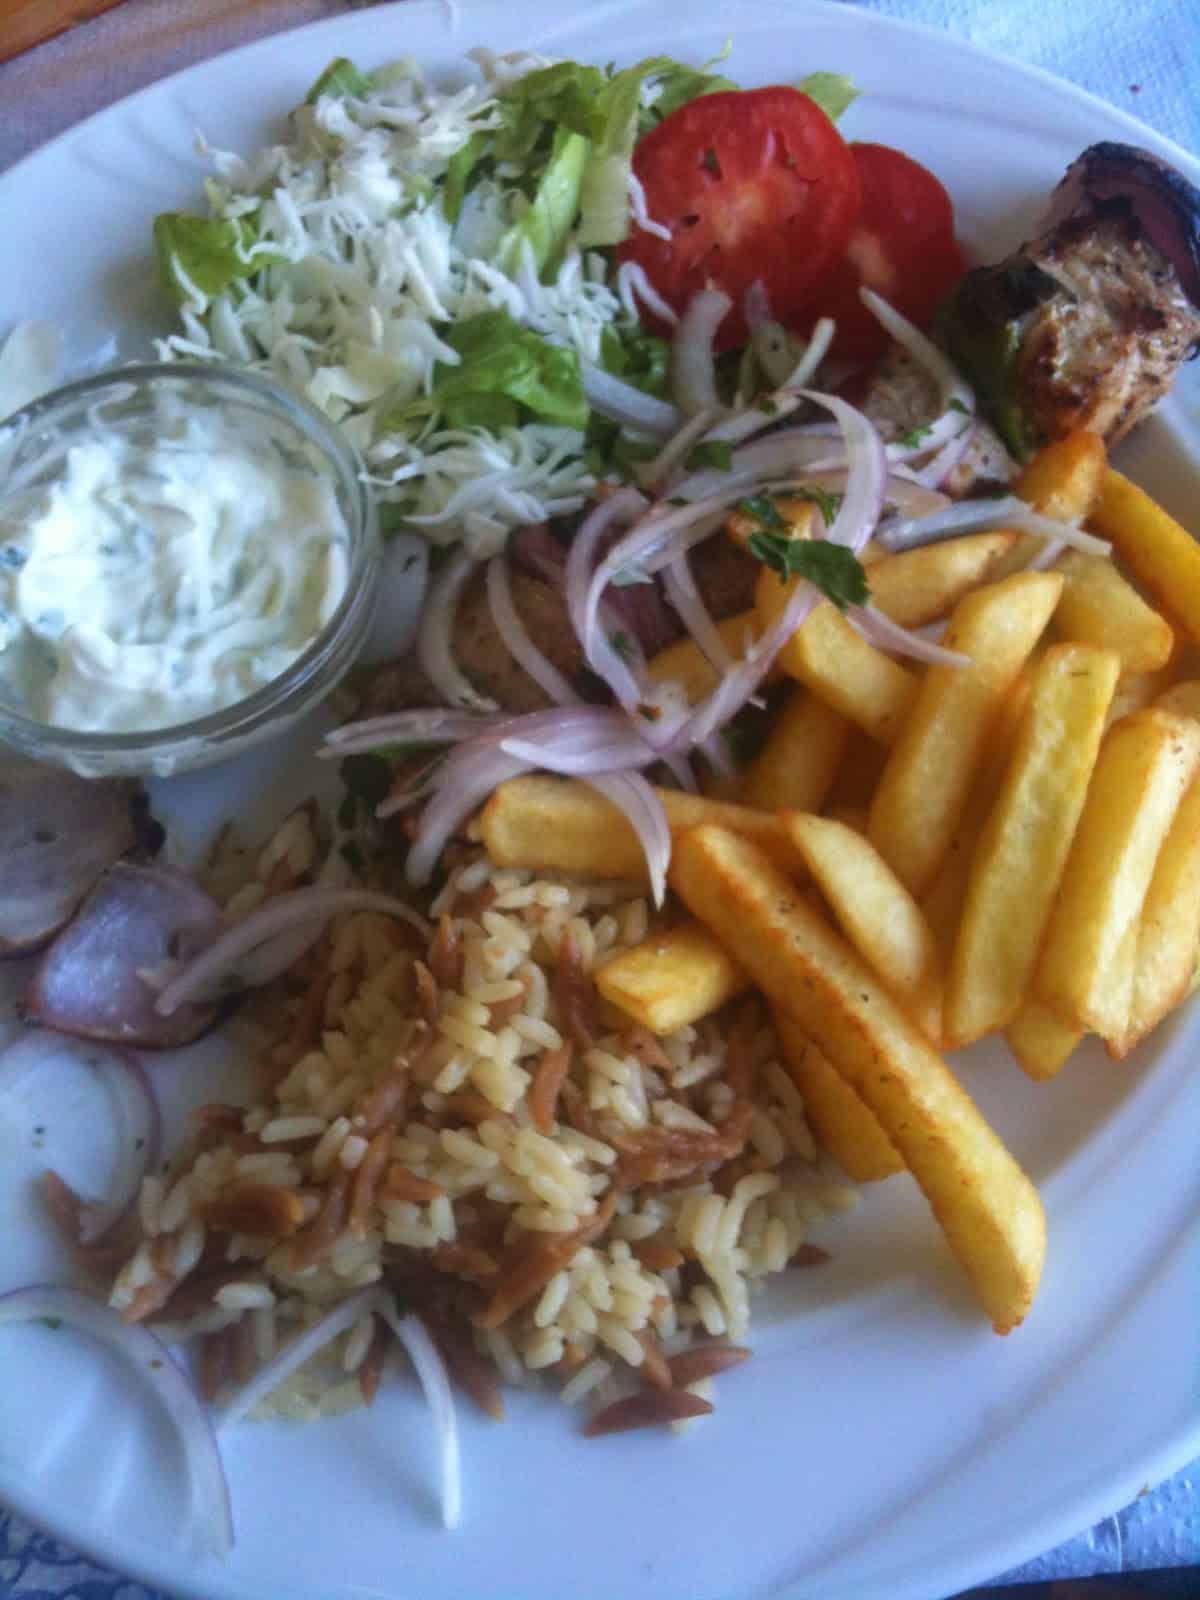 My lunch in Kos, Greece